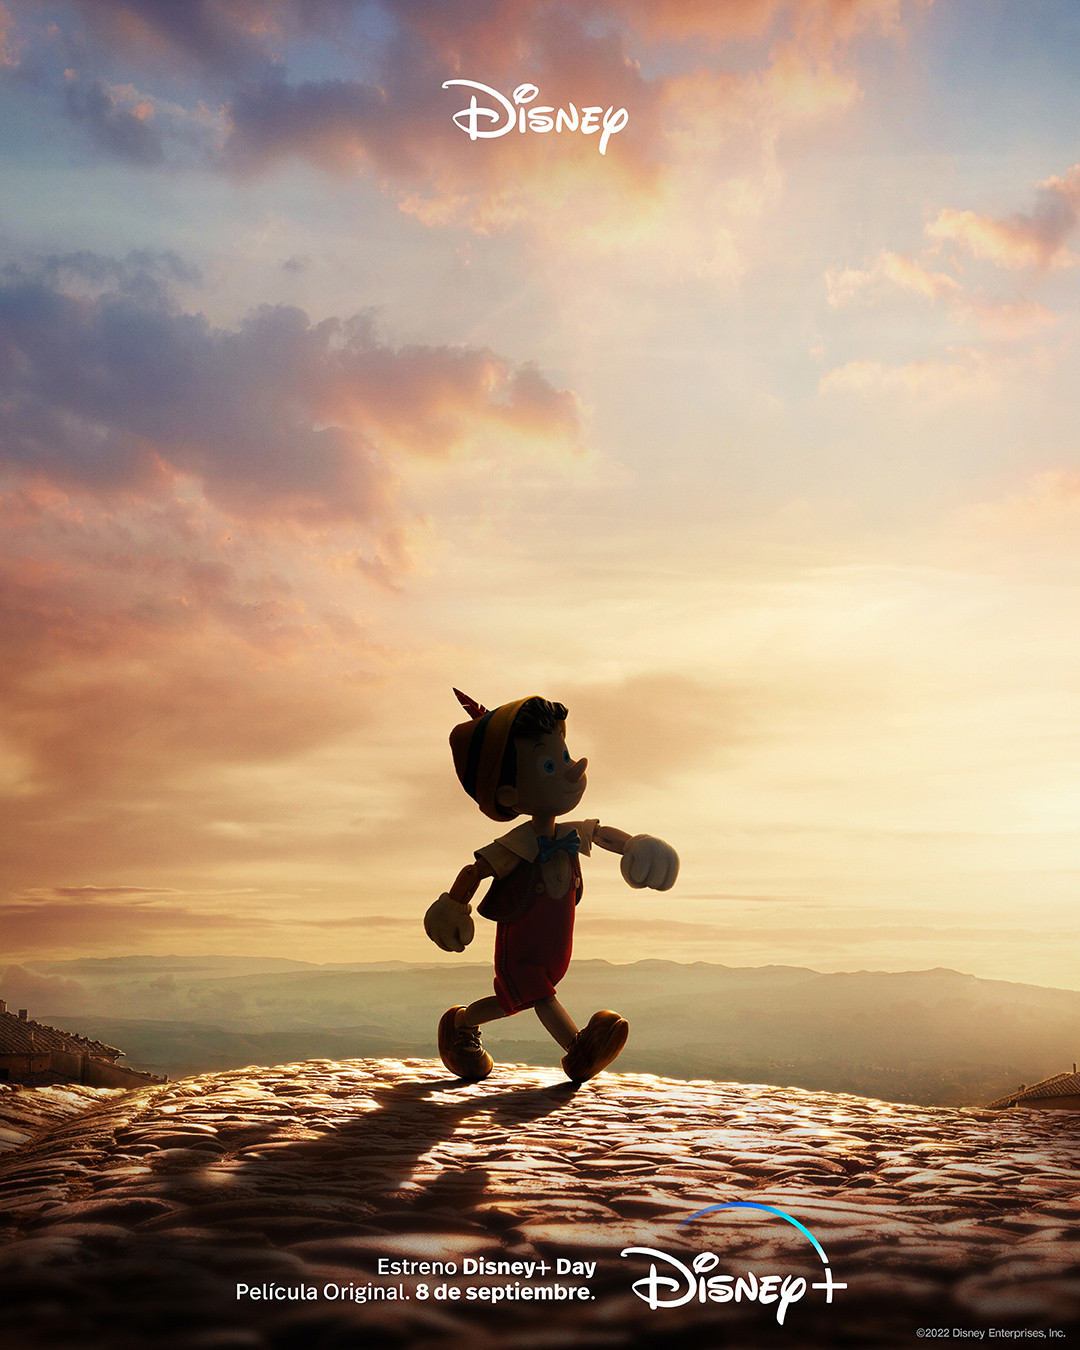 Pinocho: Galería del elenco, sinopsis y fecha de estreno en Disney+